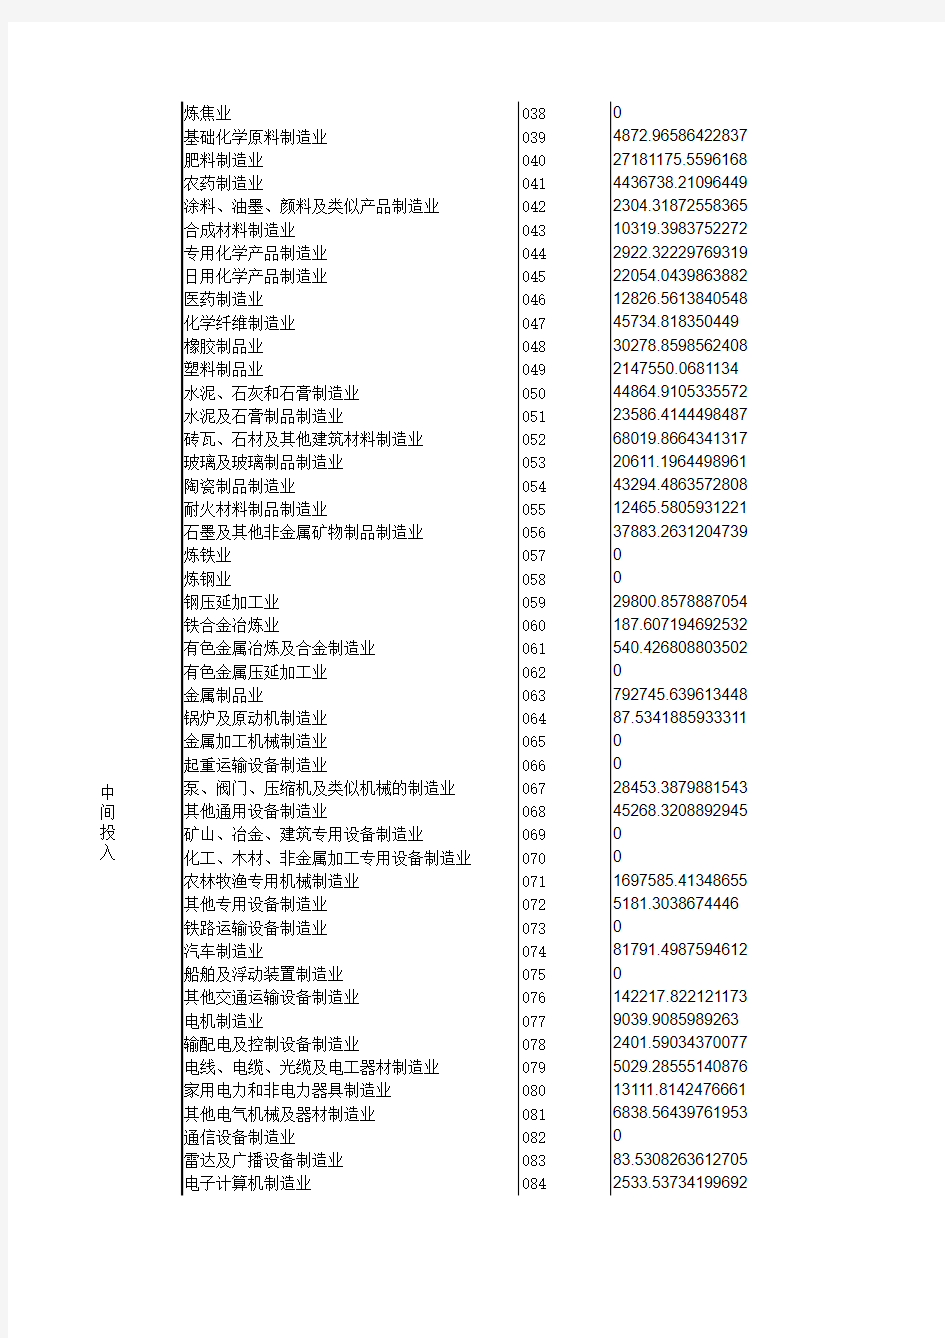 2007中国投入产出表-基本流量表(135部门)